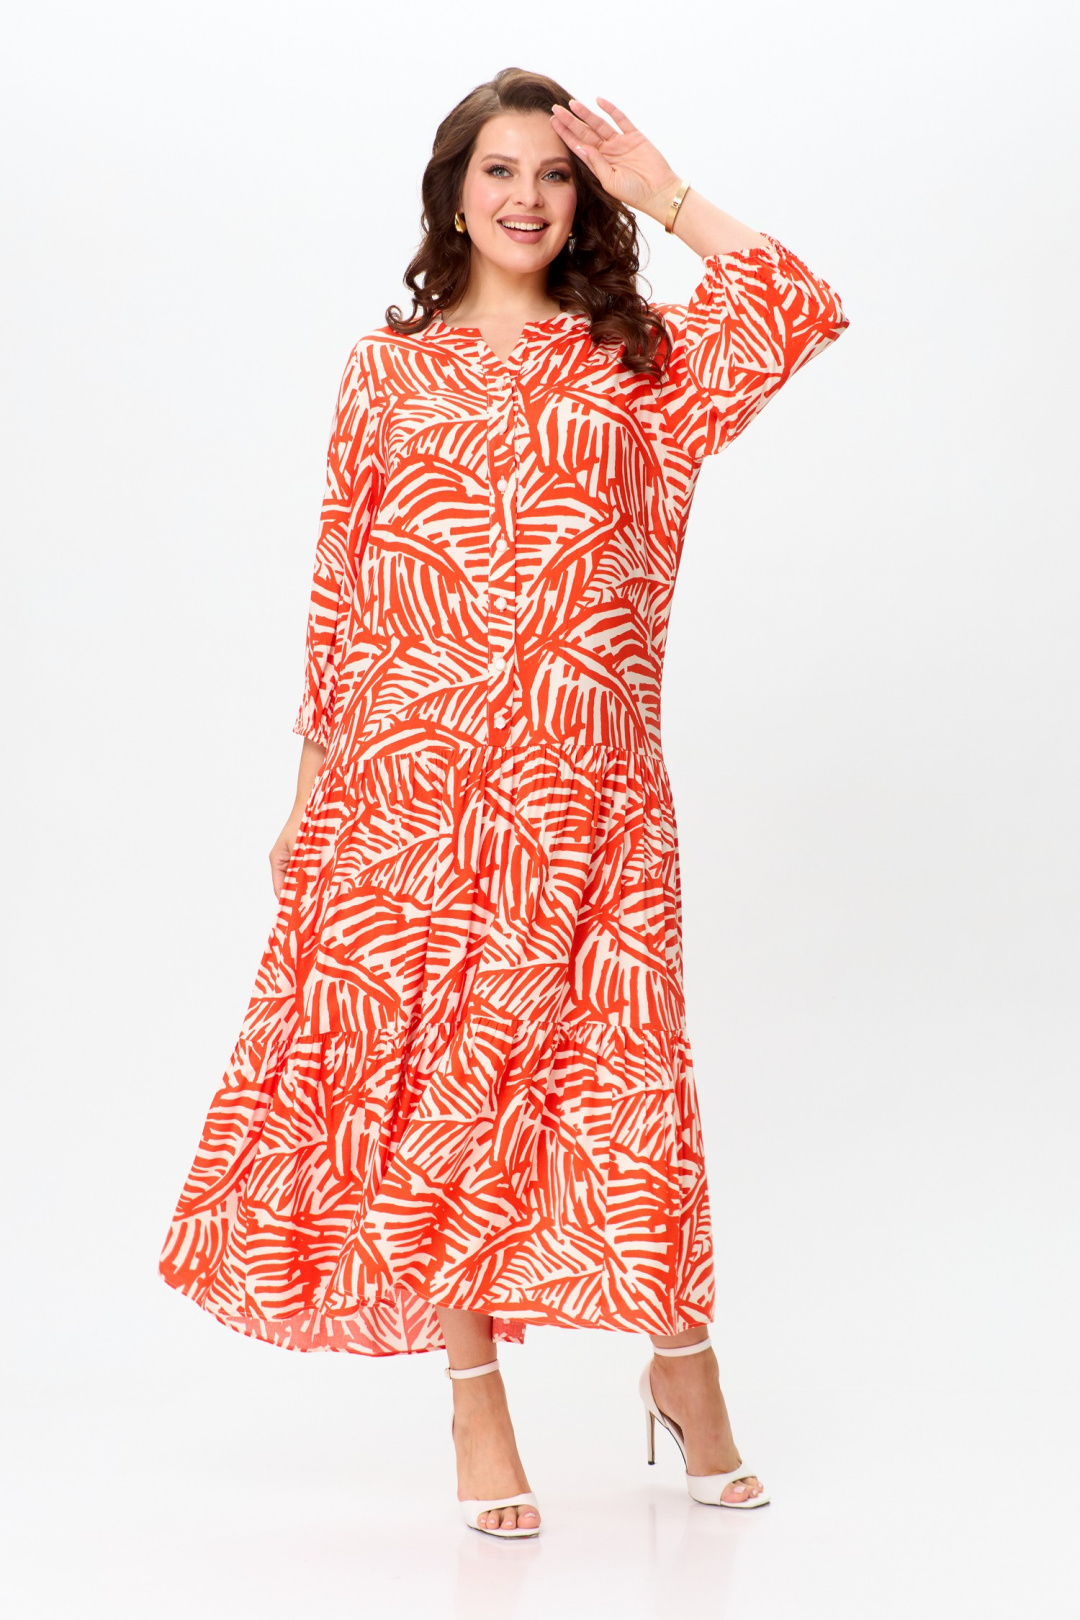 Платье ЛадисЛайн 1504 оранжевый+белый